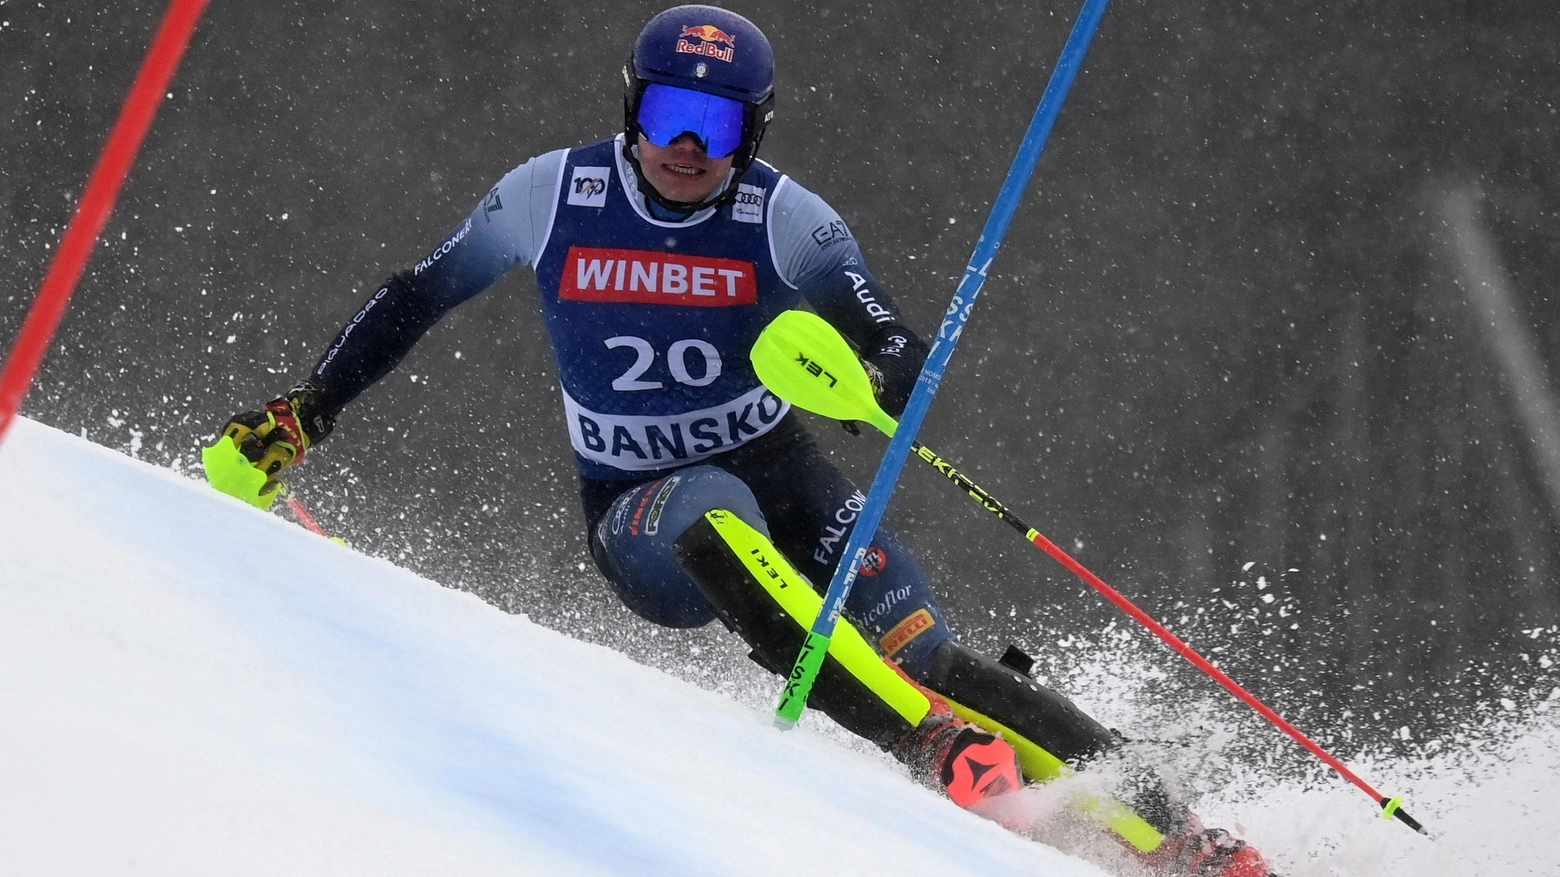 Lo sciatore austriaco batte Noel e Strasser e mette un'ipoteca quasi definitiva sulla coppa di specialità. Miglior risultato stagionale per l'azzurro Vinatzer